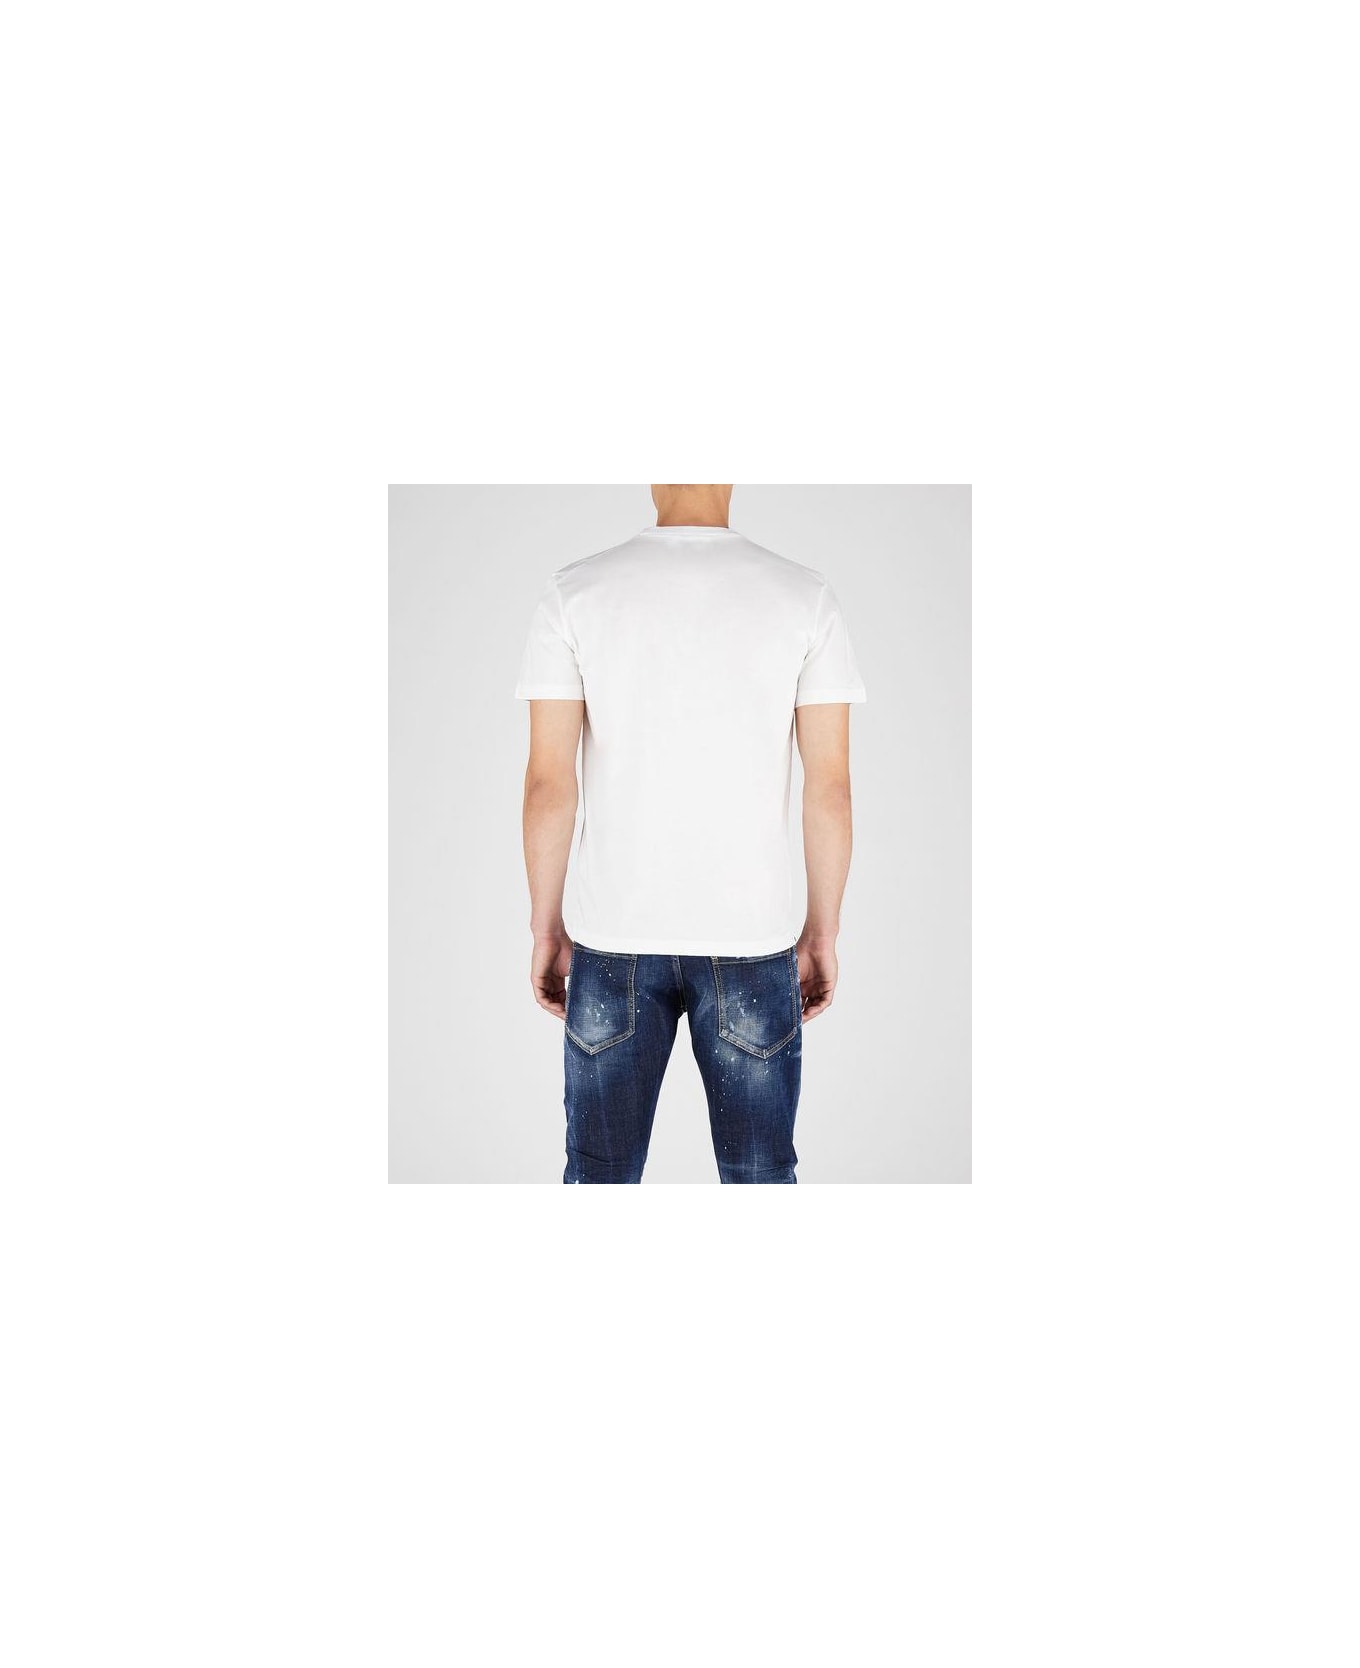 Dsquared2 _t-shirt - White